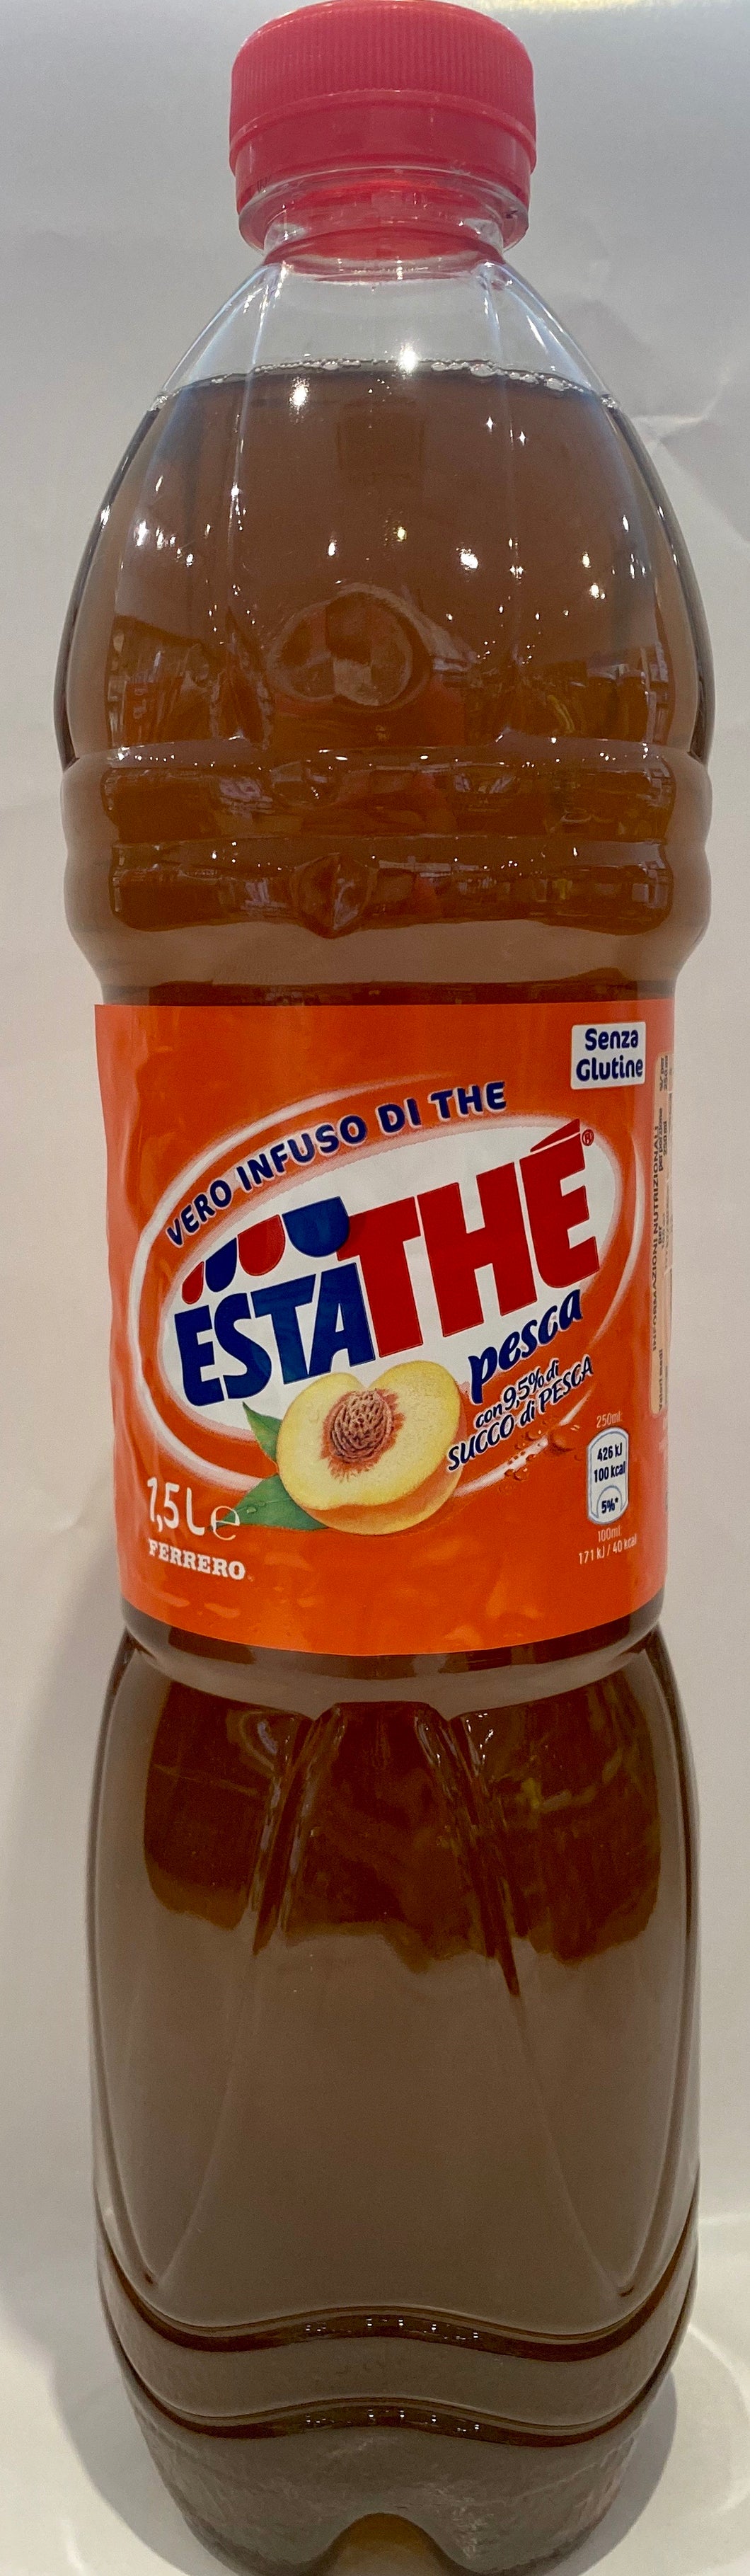 Esta - Tea Peach Flavored - 1.5L (50.7 oz)